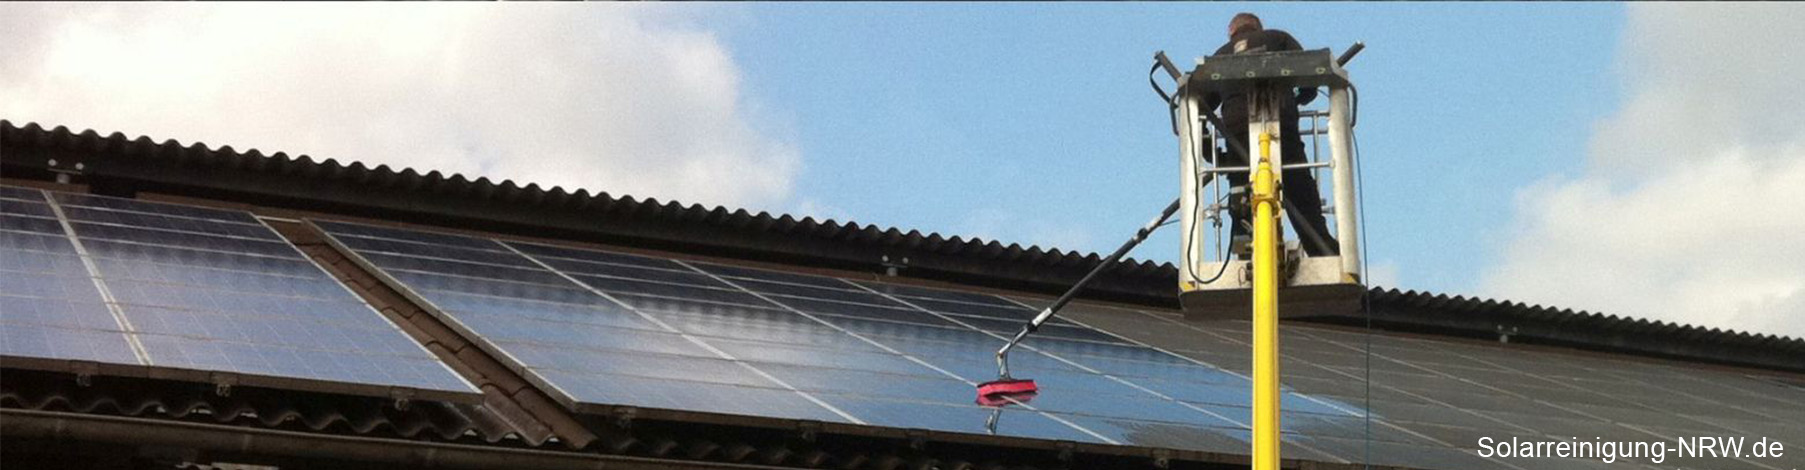 Solarreinigung NRW - Solarreinigung und Photovoltaik Reinigung Technik